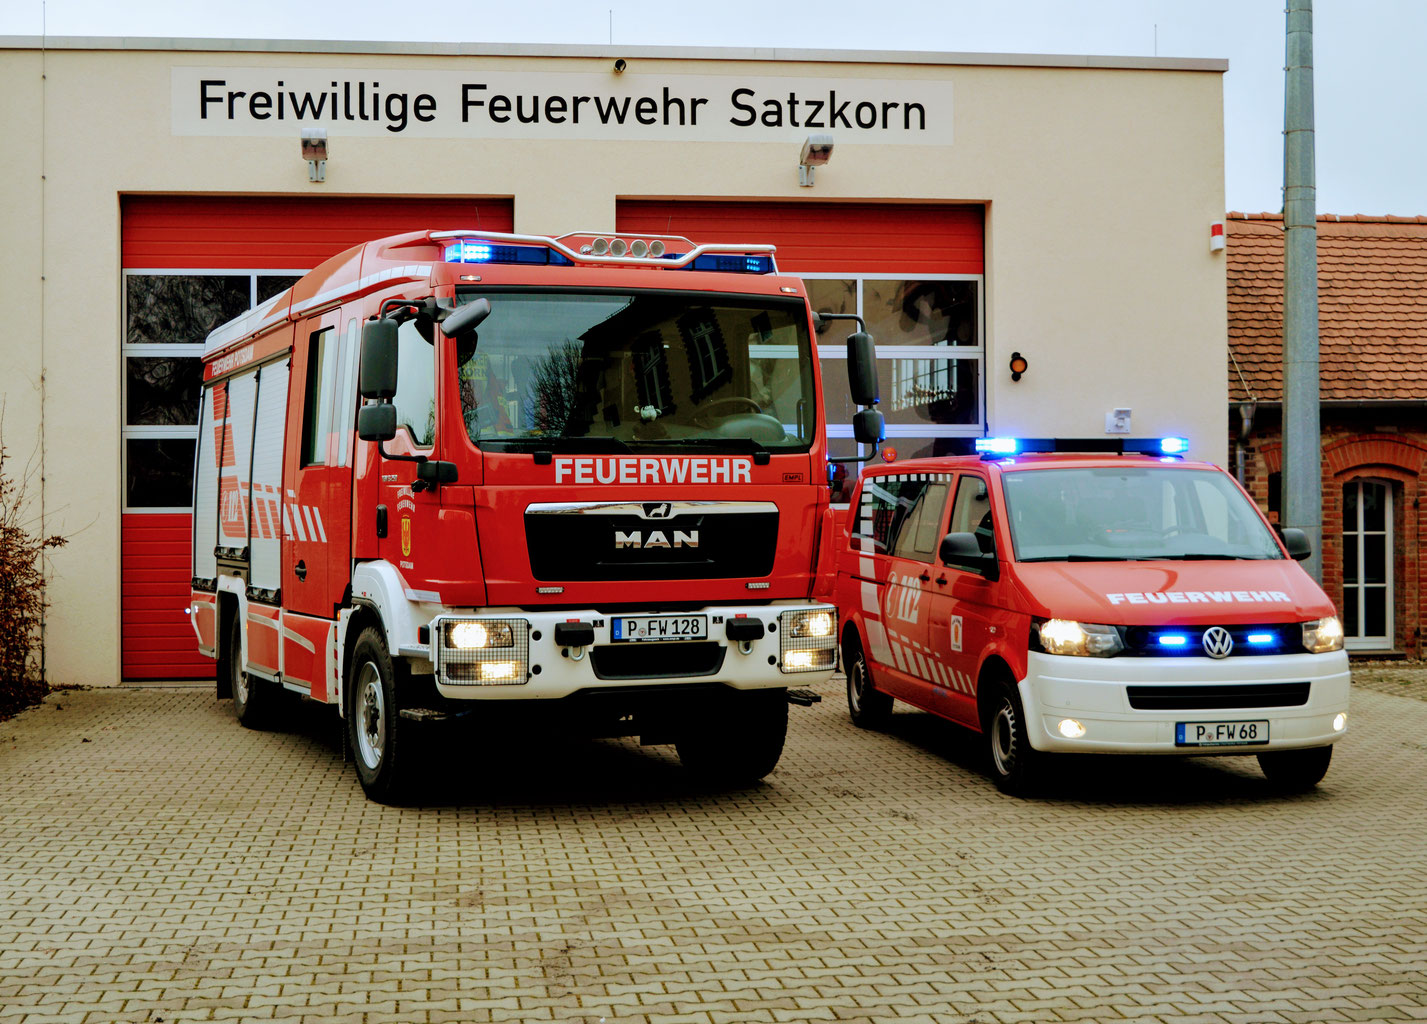 (c) Feuerwehr-satzkorn.de